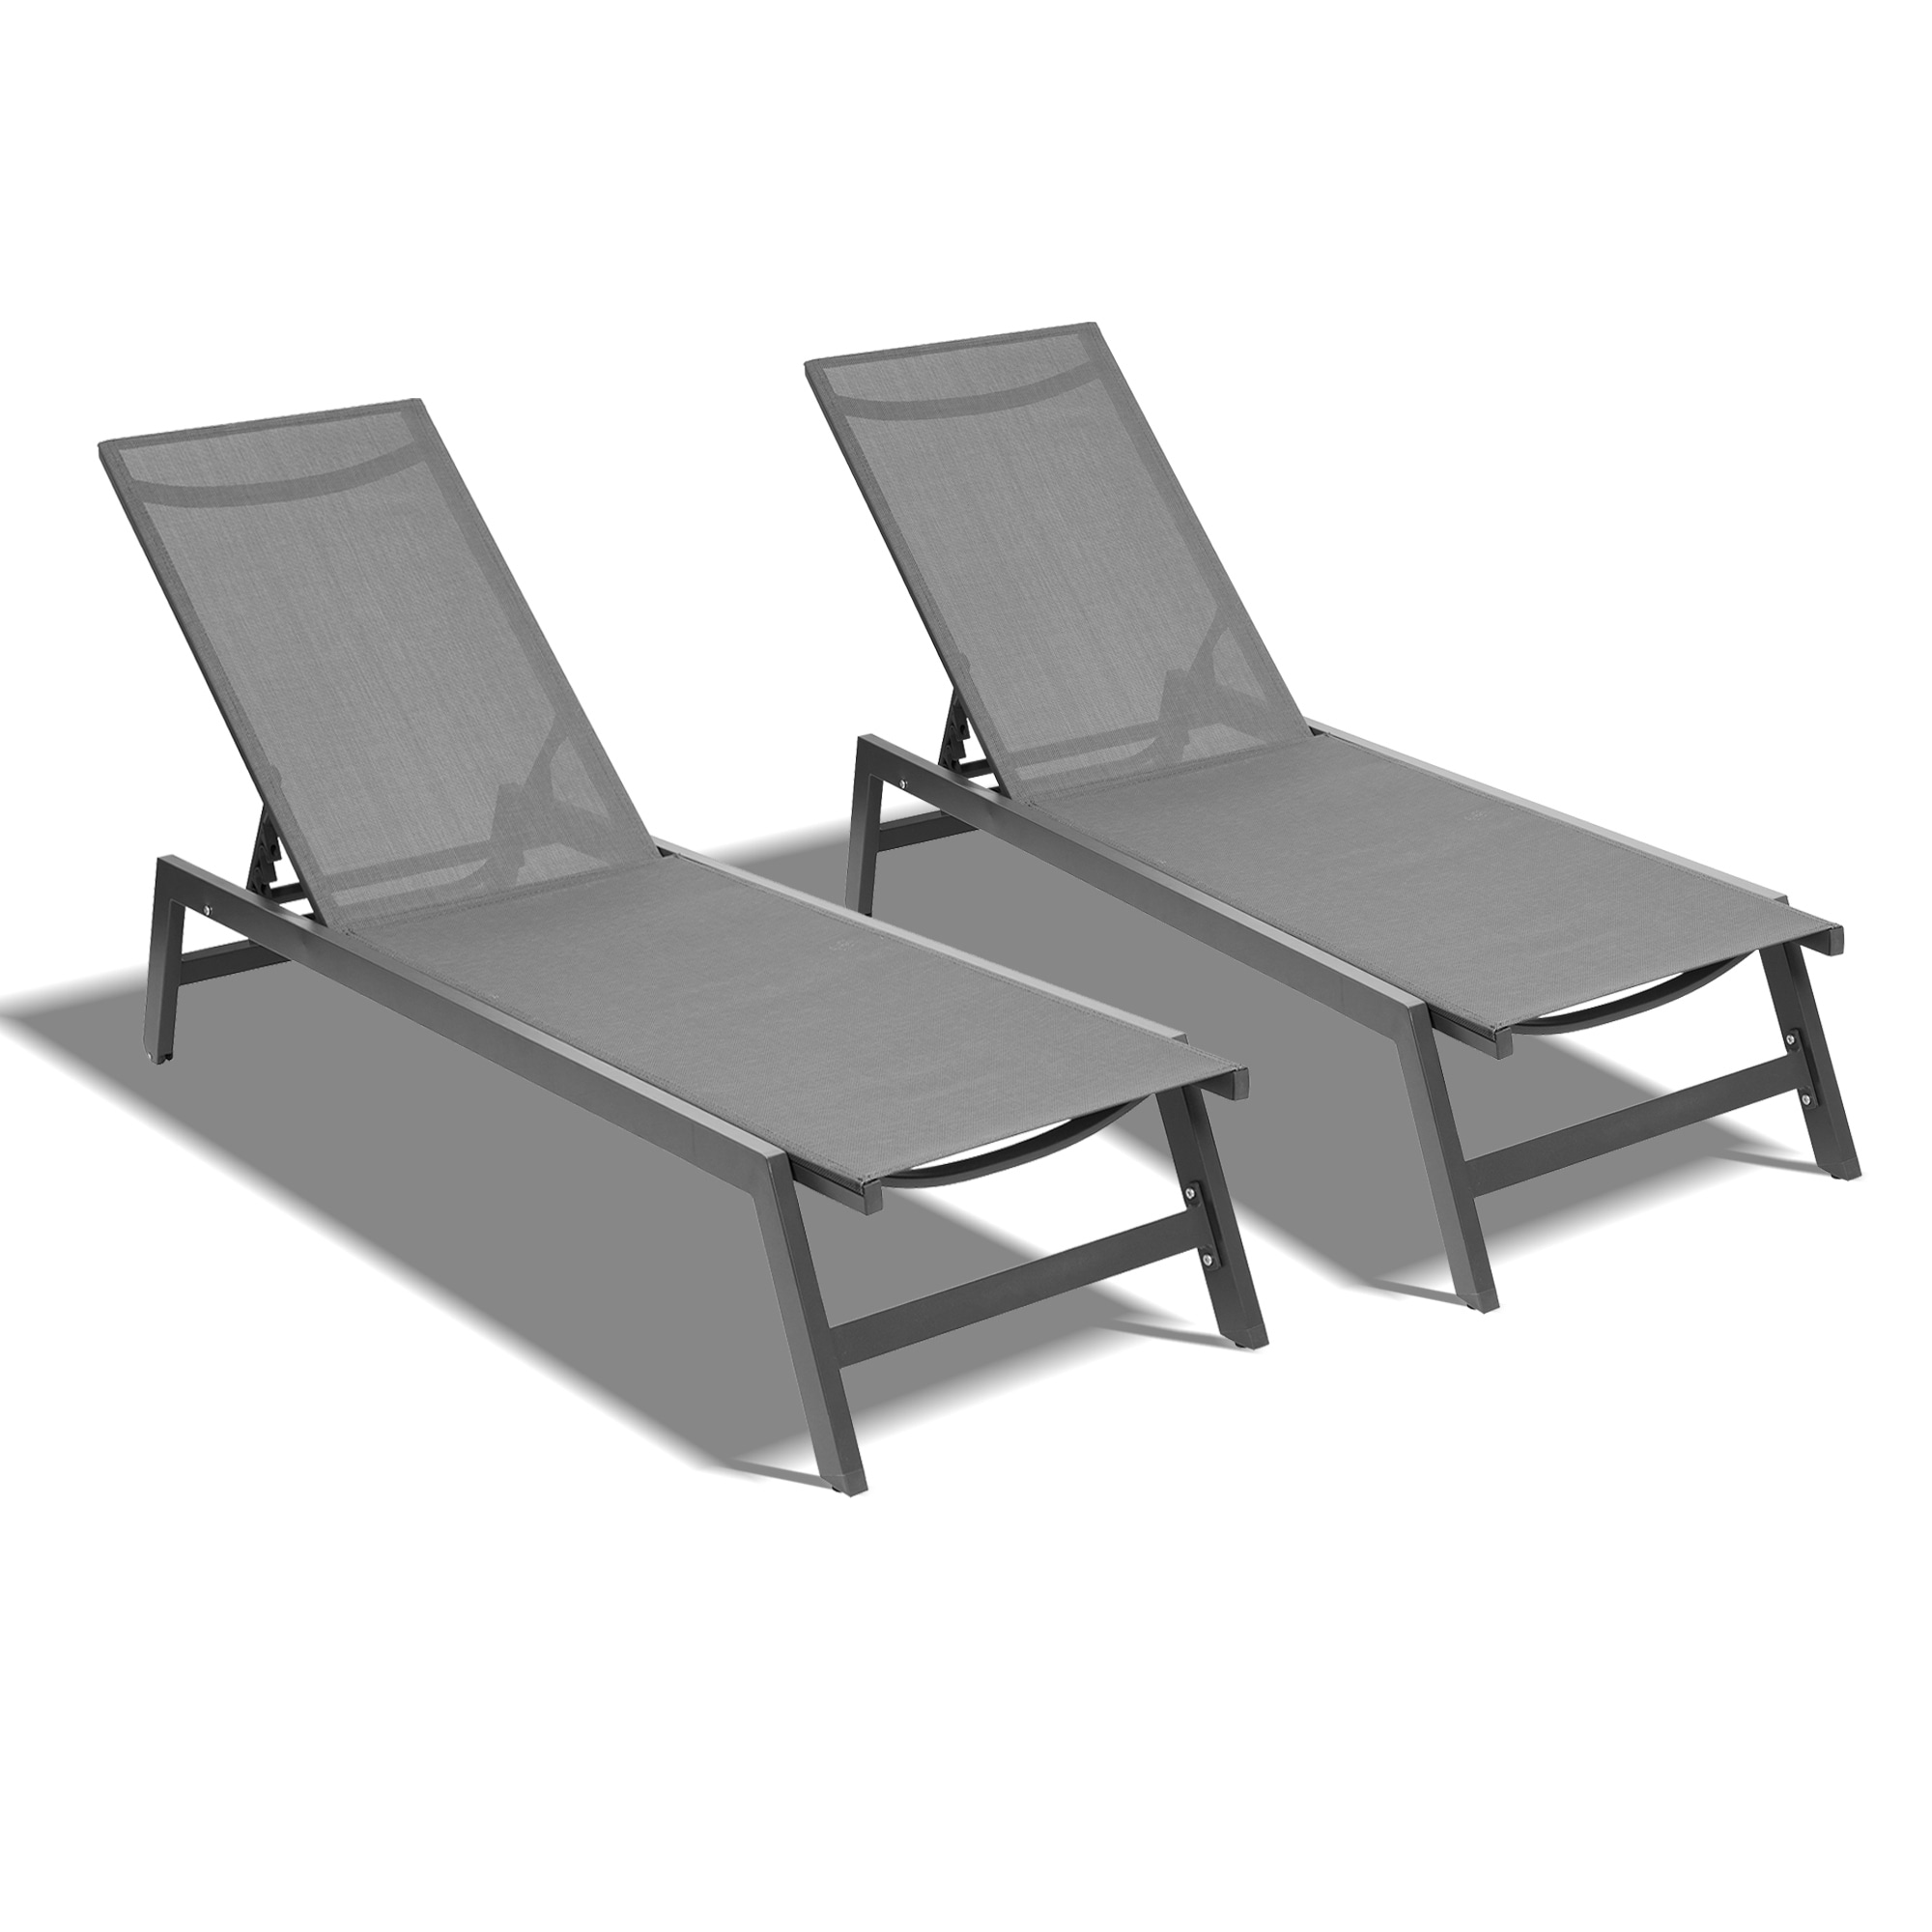 2-pcs Set Chaise Lounge Chairs five-position Adjustable Aluminum Recliner